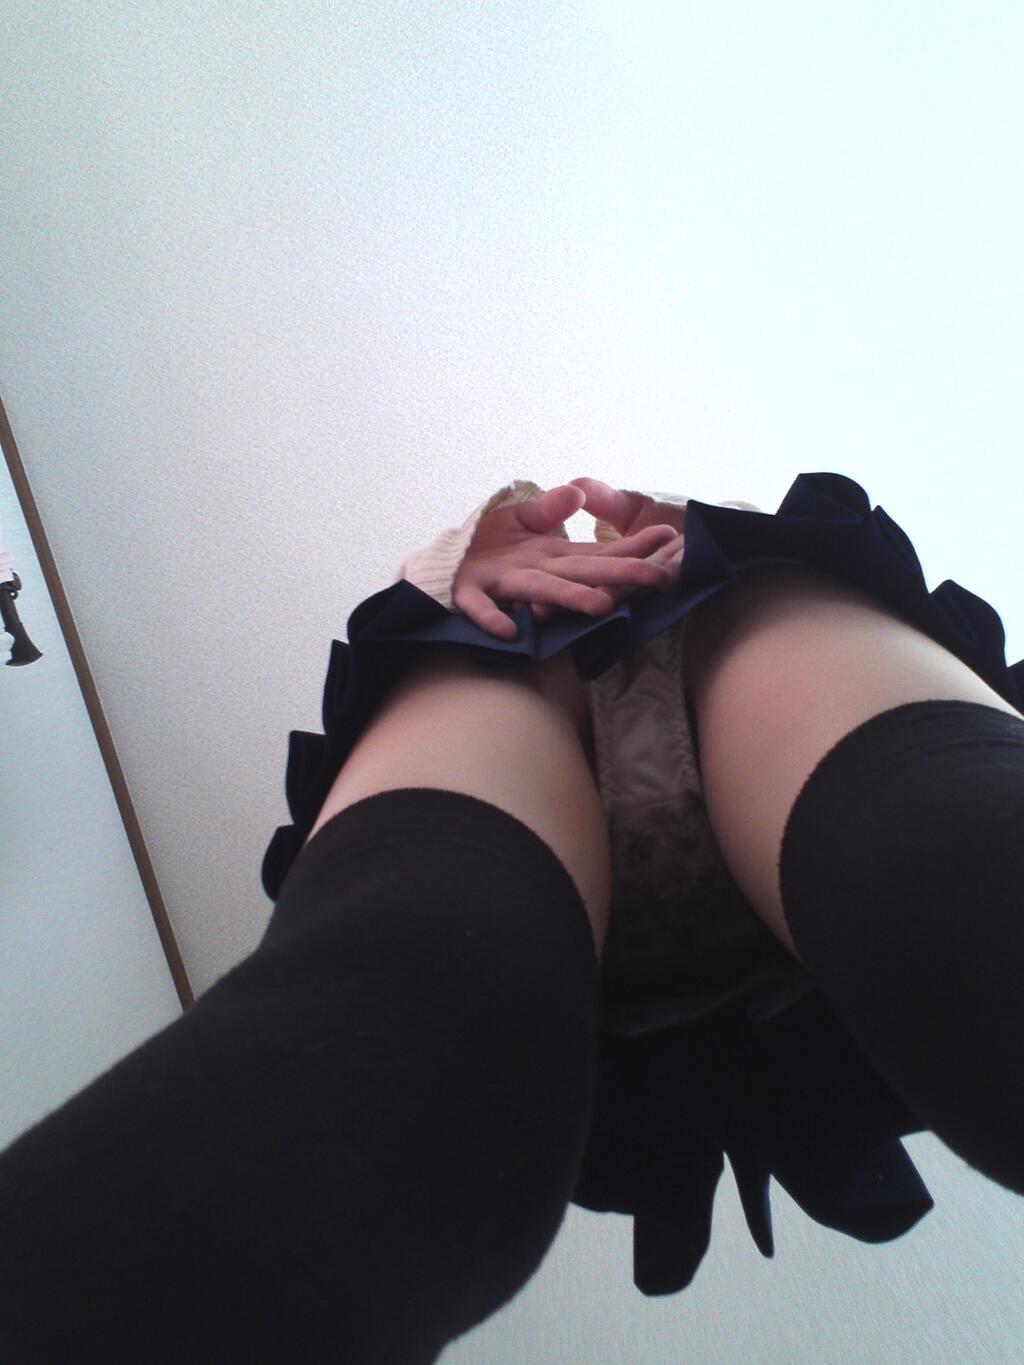 【Twitter】制服JK18歳がM字エロポーズでおぱんつから全裸まで自撮りうp019